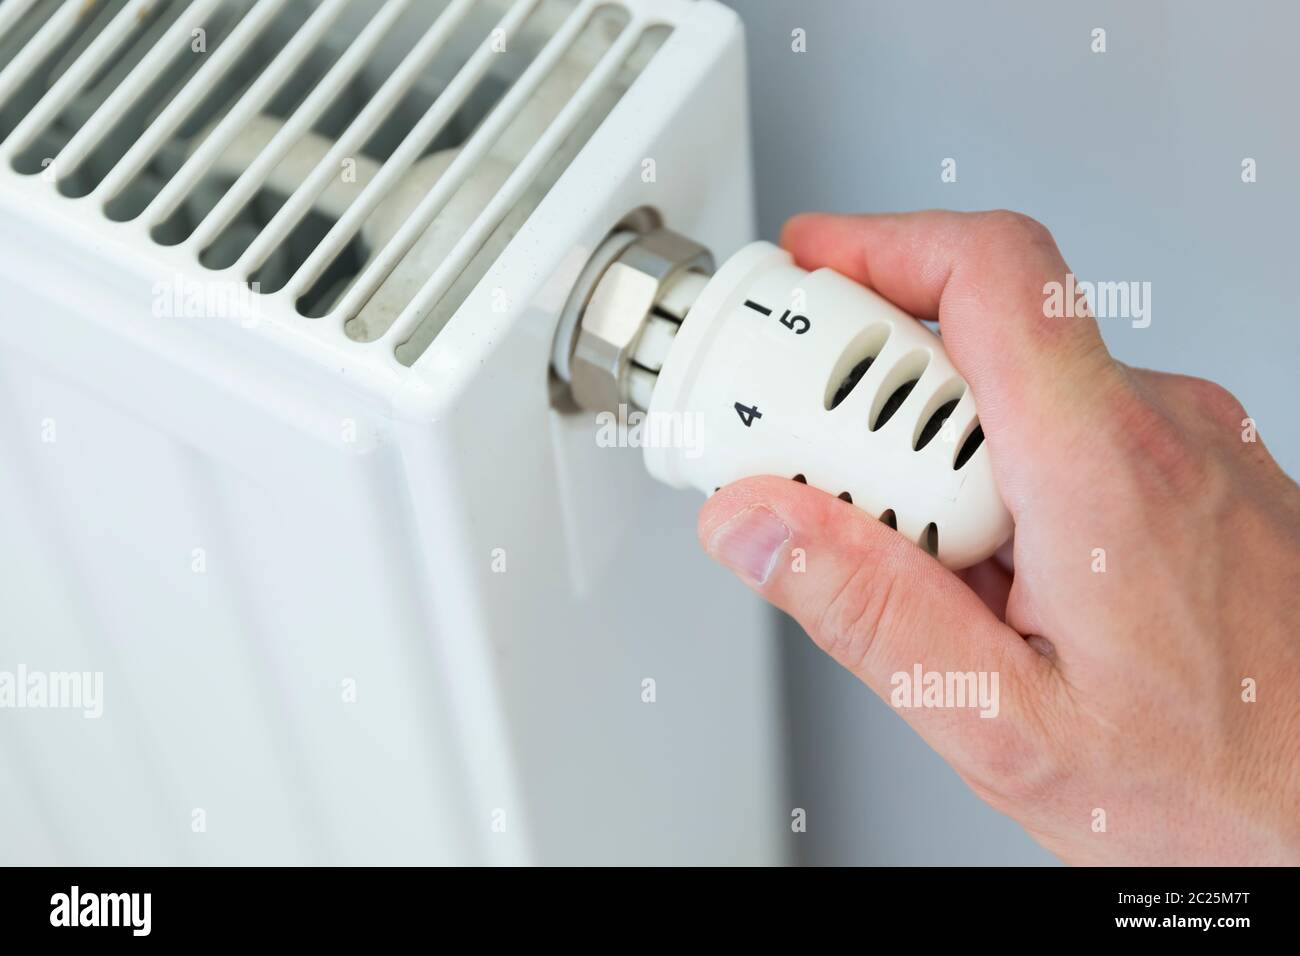 Von Hand einstellbares Thermostatventil des Heizkörpers in einem Raum. Stockfoto